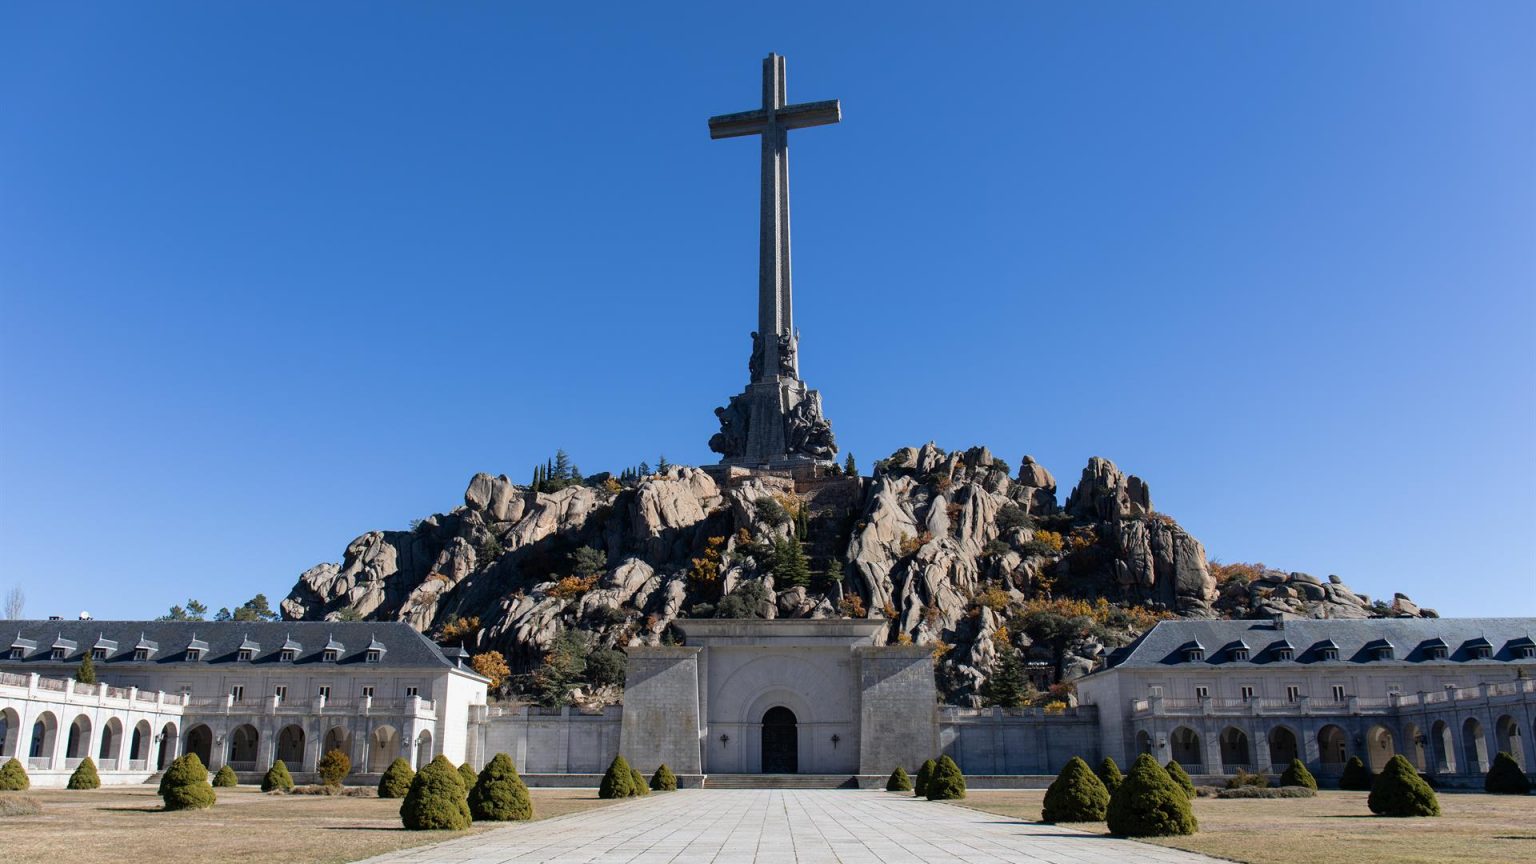 Demandan al ‘dos’ de Bolaños por comparar el Valle de los Caídos con los crematorios nazis